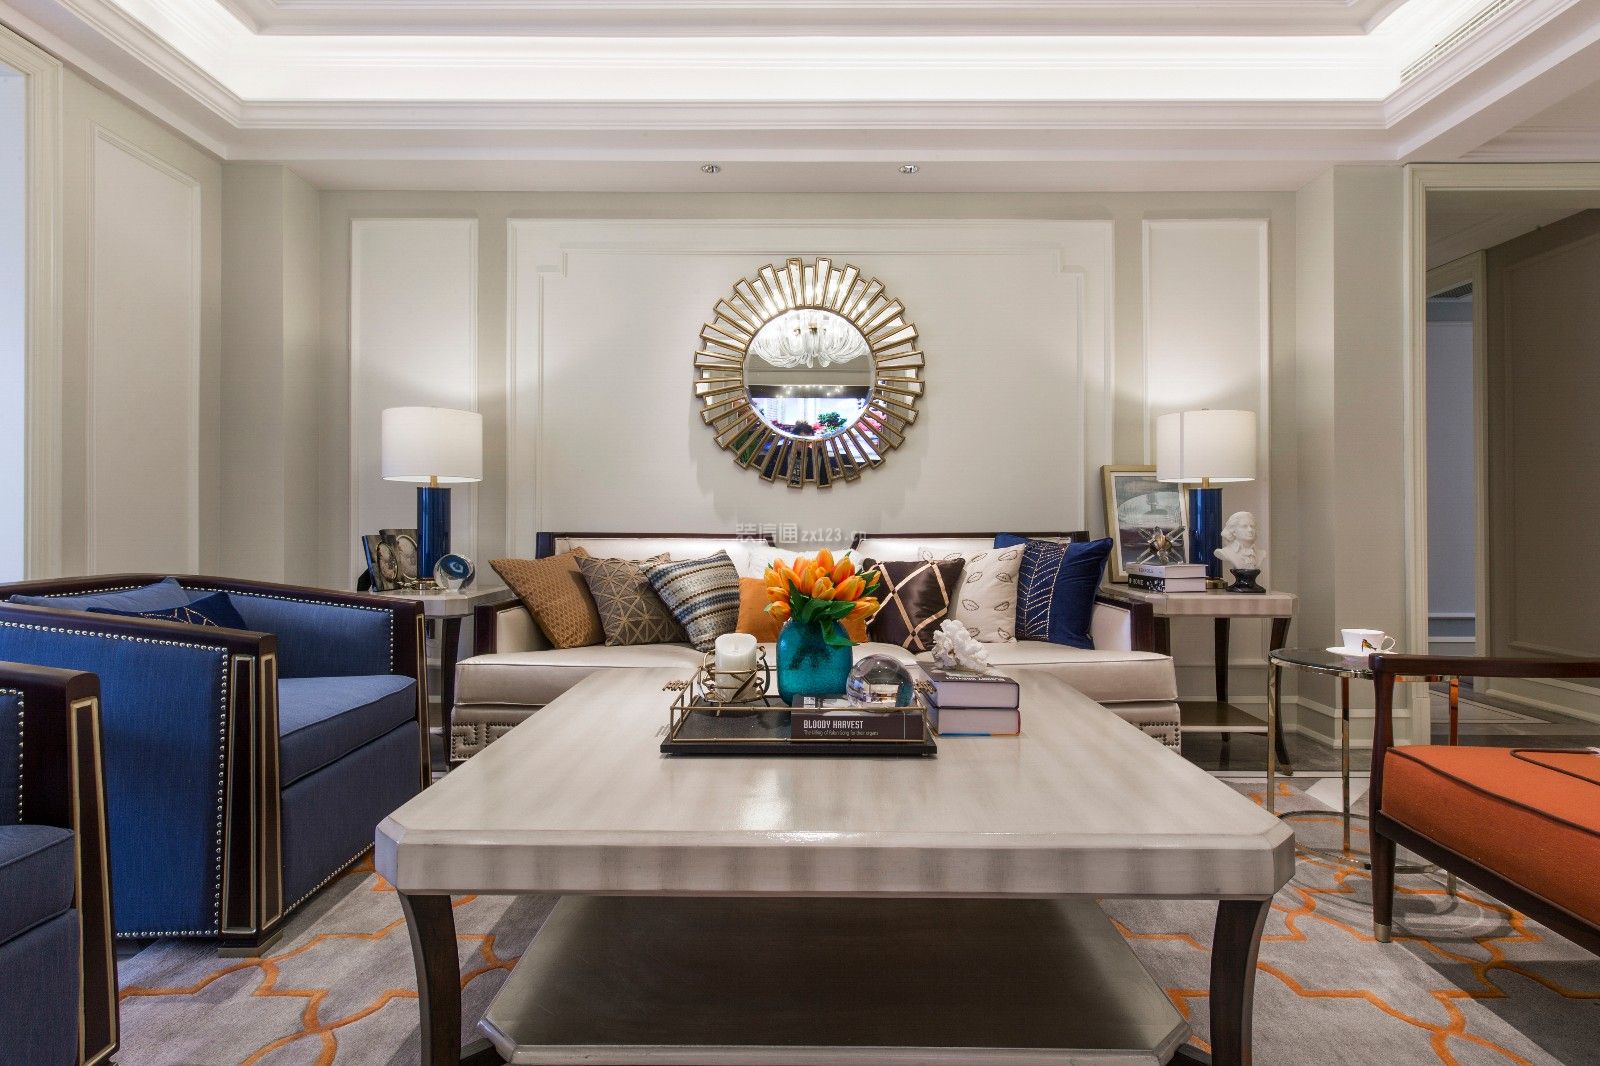 美式客厅沙发效果图 美式客厅装修风格